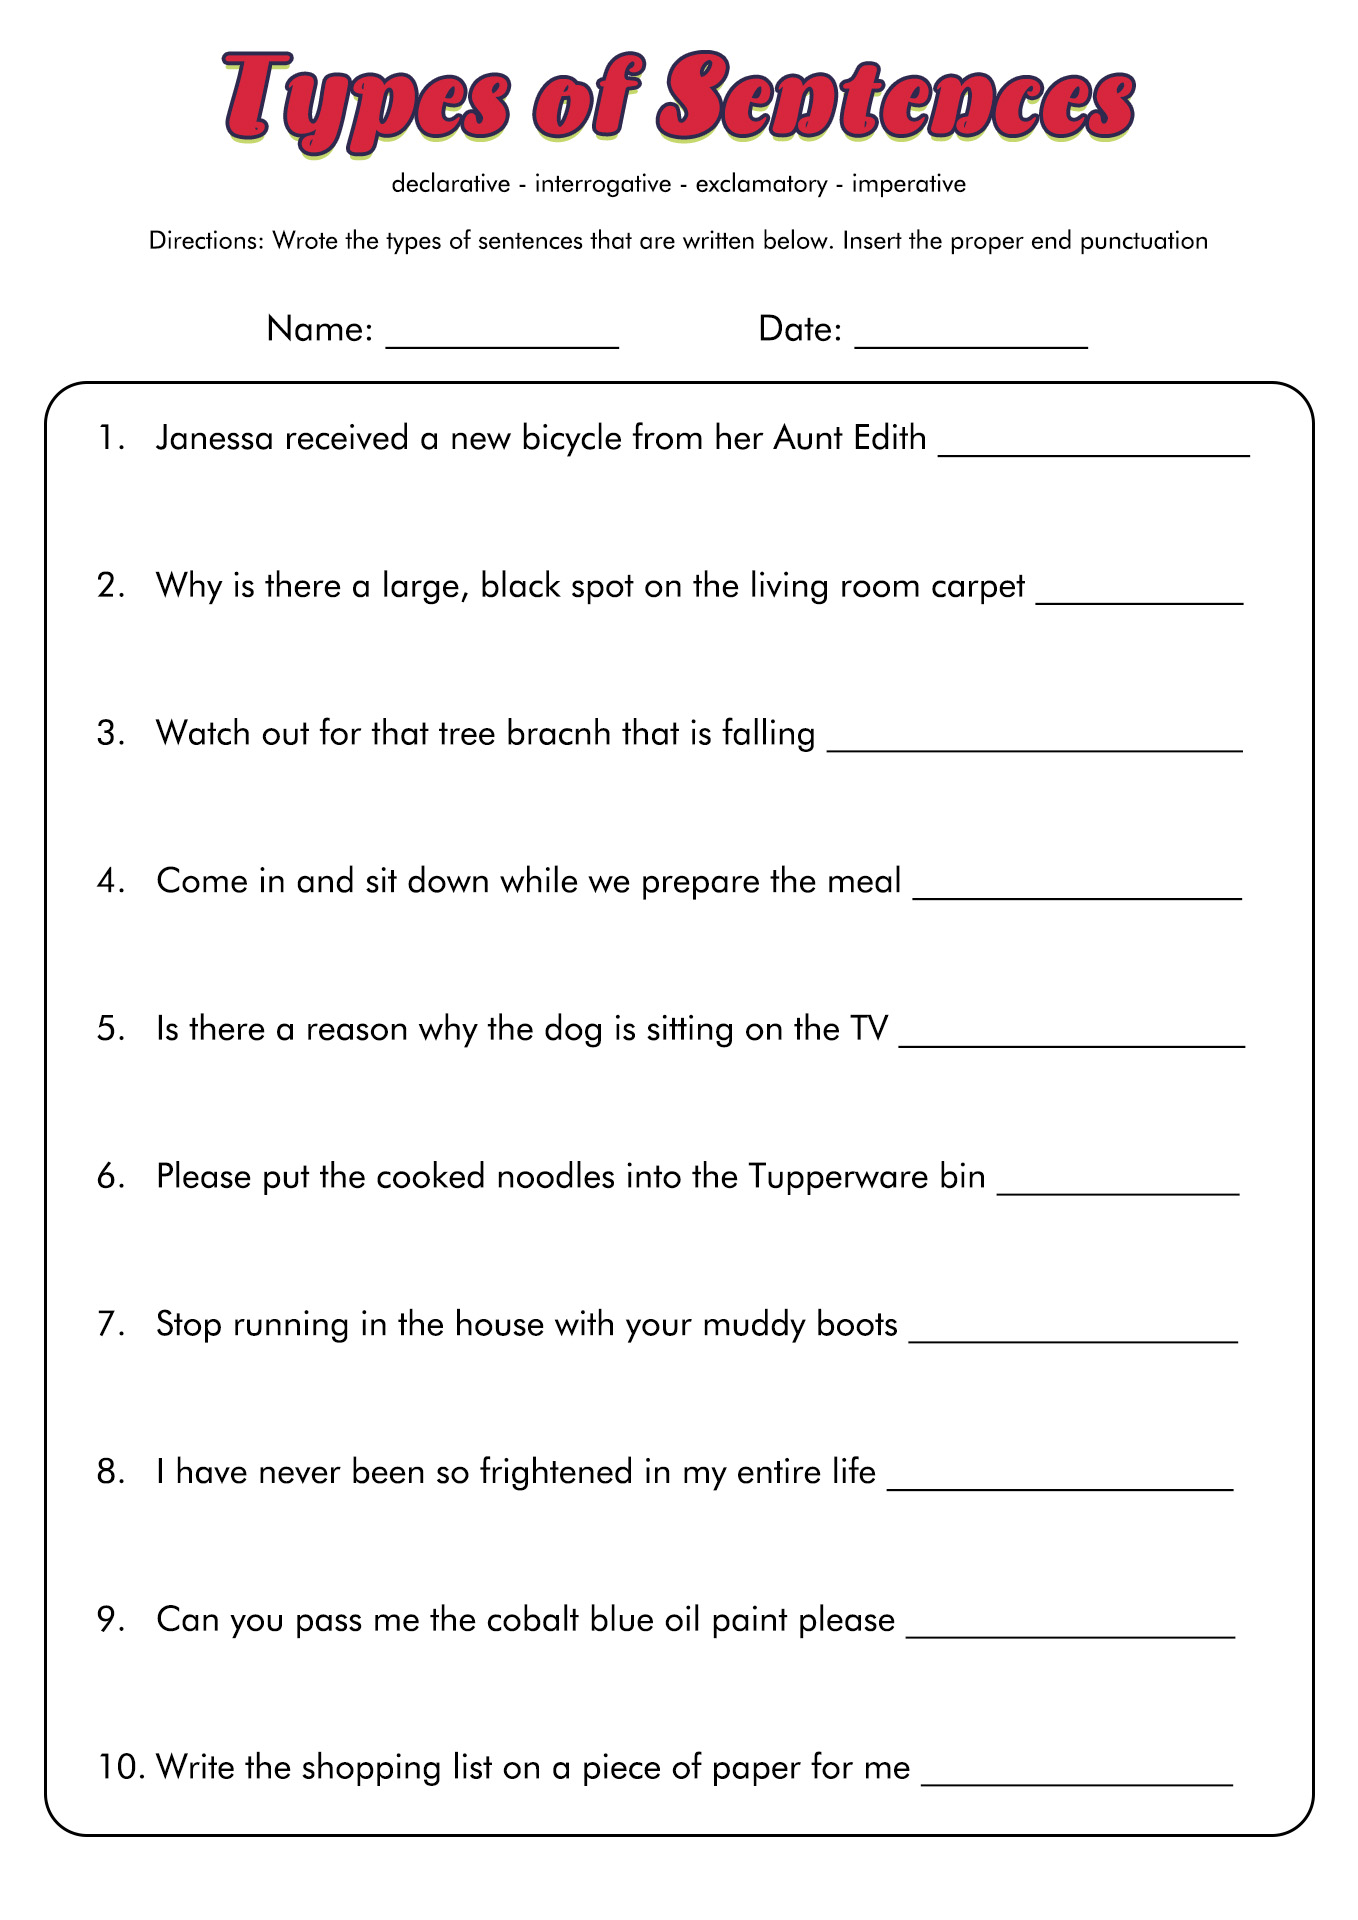 4 Kinds of Sentences Worksheet Image